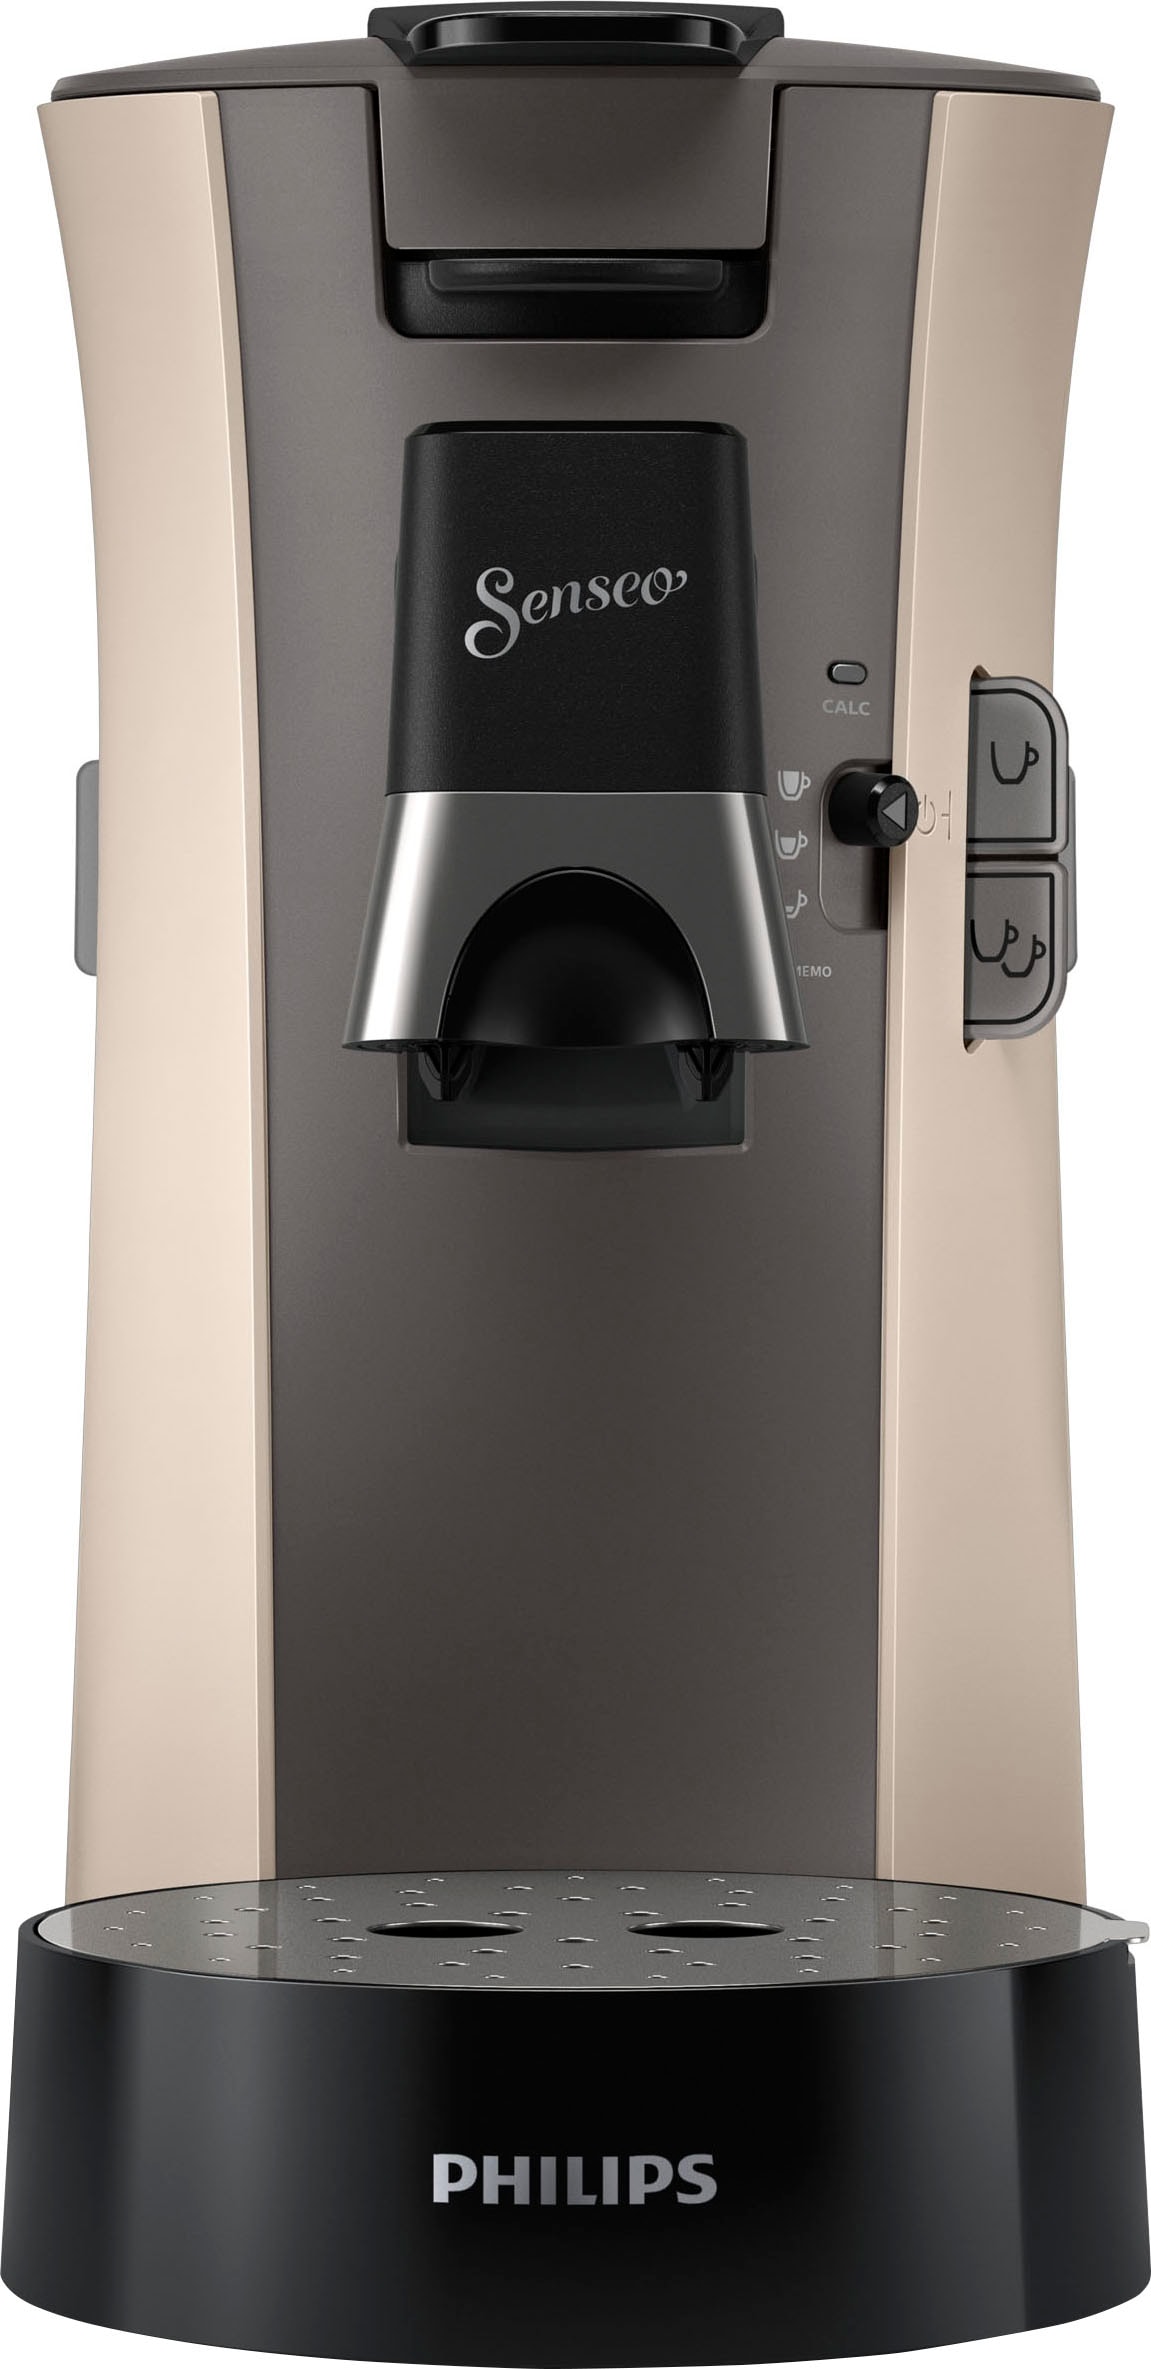 Philips Senseo Kaffeepadmaschine »Select UVP bestellen im +3 von 21% recyceltem Memo-Funktion, Plastik, 14,- € CSA240/30, Kaffeespezialitäten«, inkl. Gratis-Zugaben Wert aus online